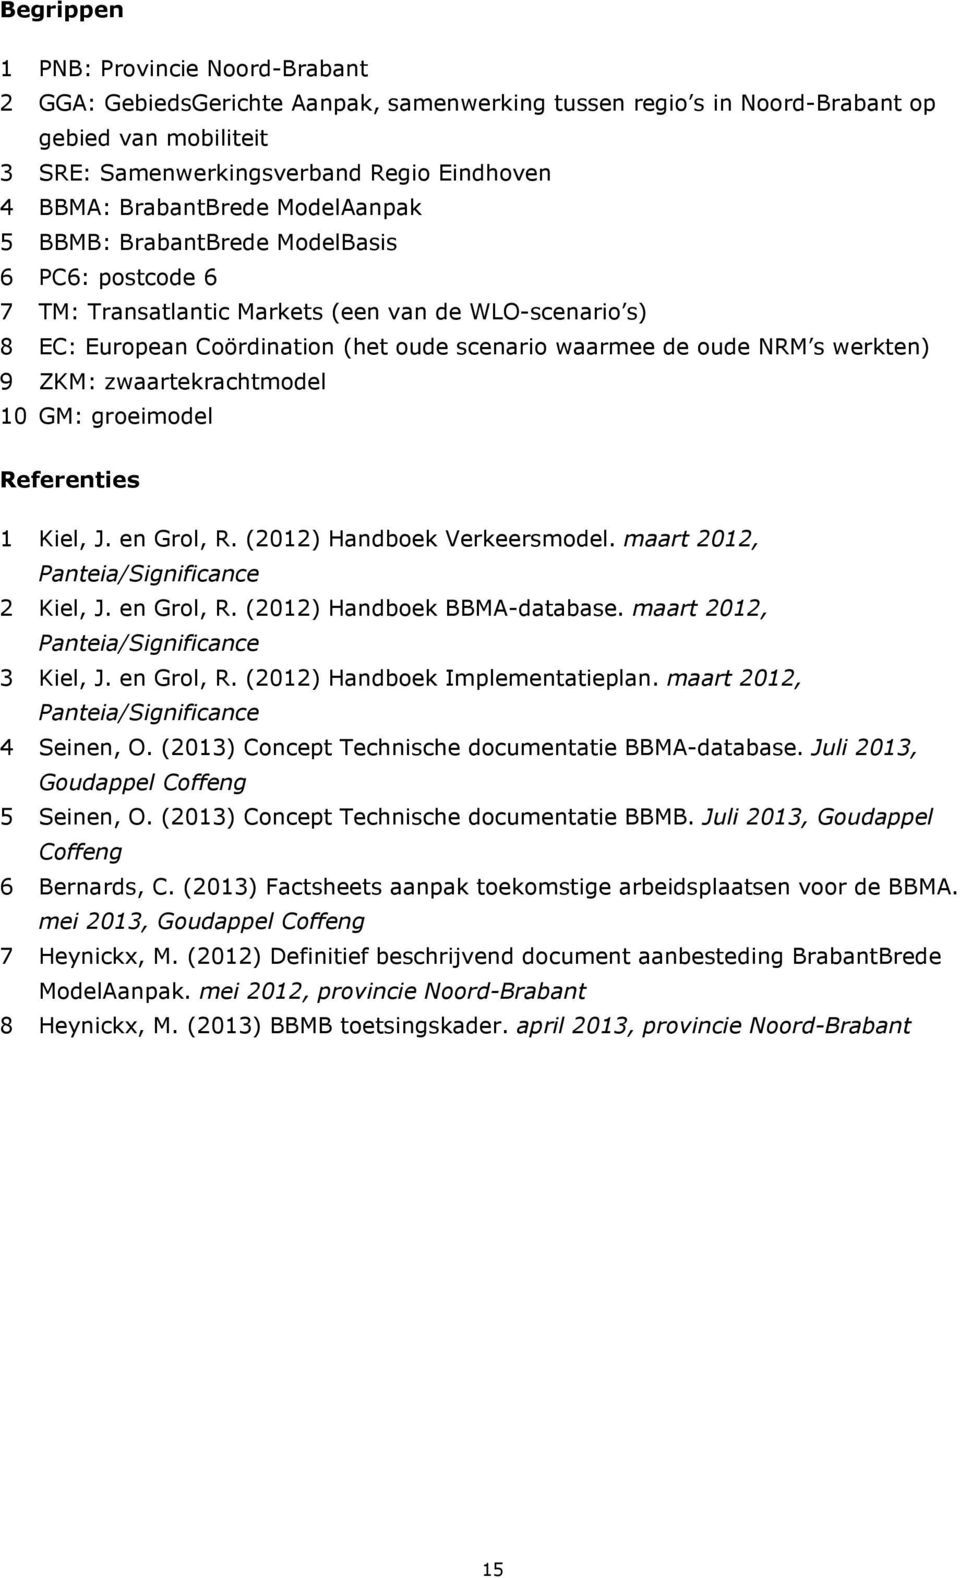 werkten) 9 ZKM: zwaartekrachtmodel 10 GM: groeimodel Referenties 1 Kiel, J. en Grol, R. (2012) Handboek Verkeersmodel. maart 2012, Panteia/Significance 2 Kiel, J. en Grol, R. (2012) Handboek BBMA-database.